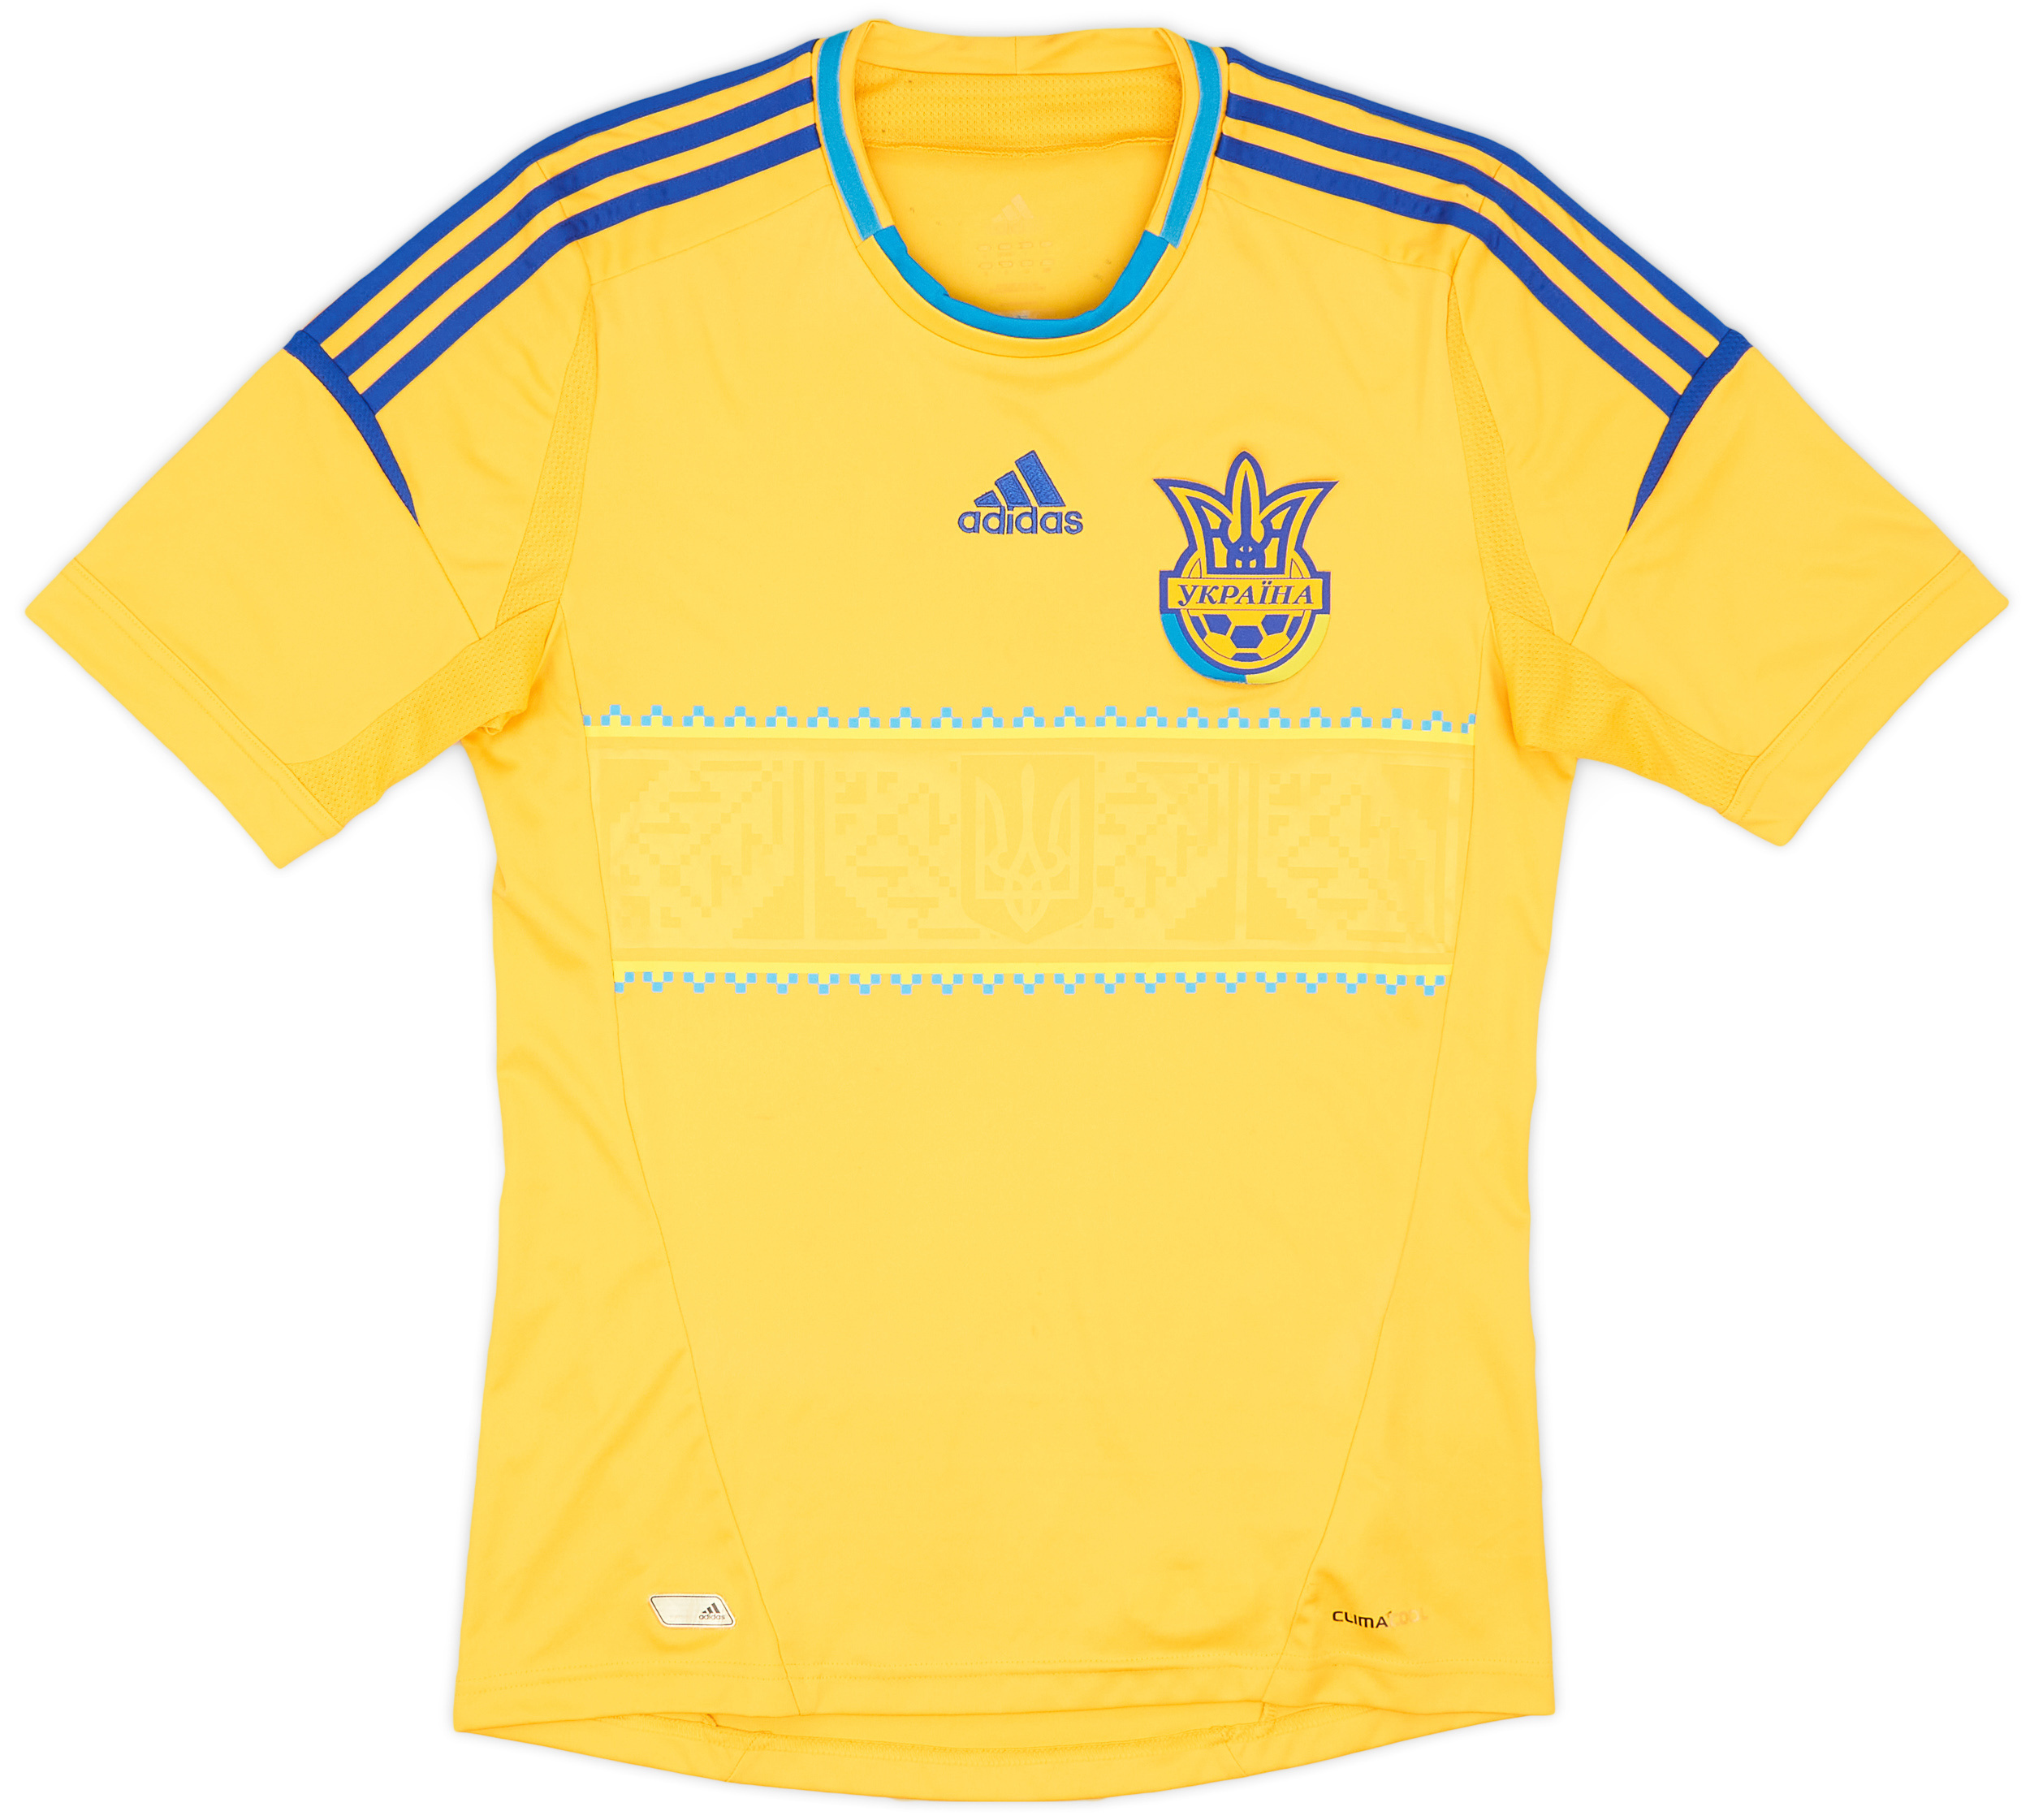 Retro Ukraine Shirt